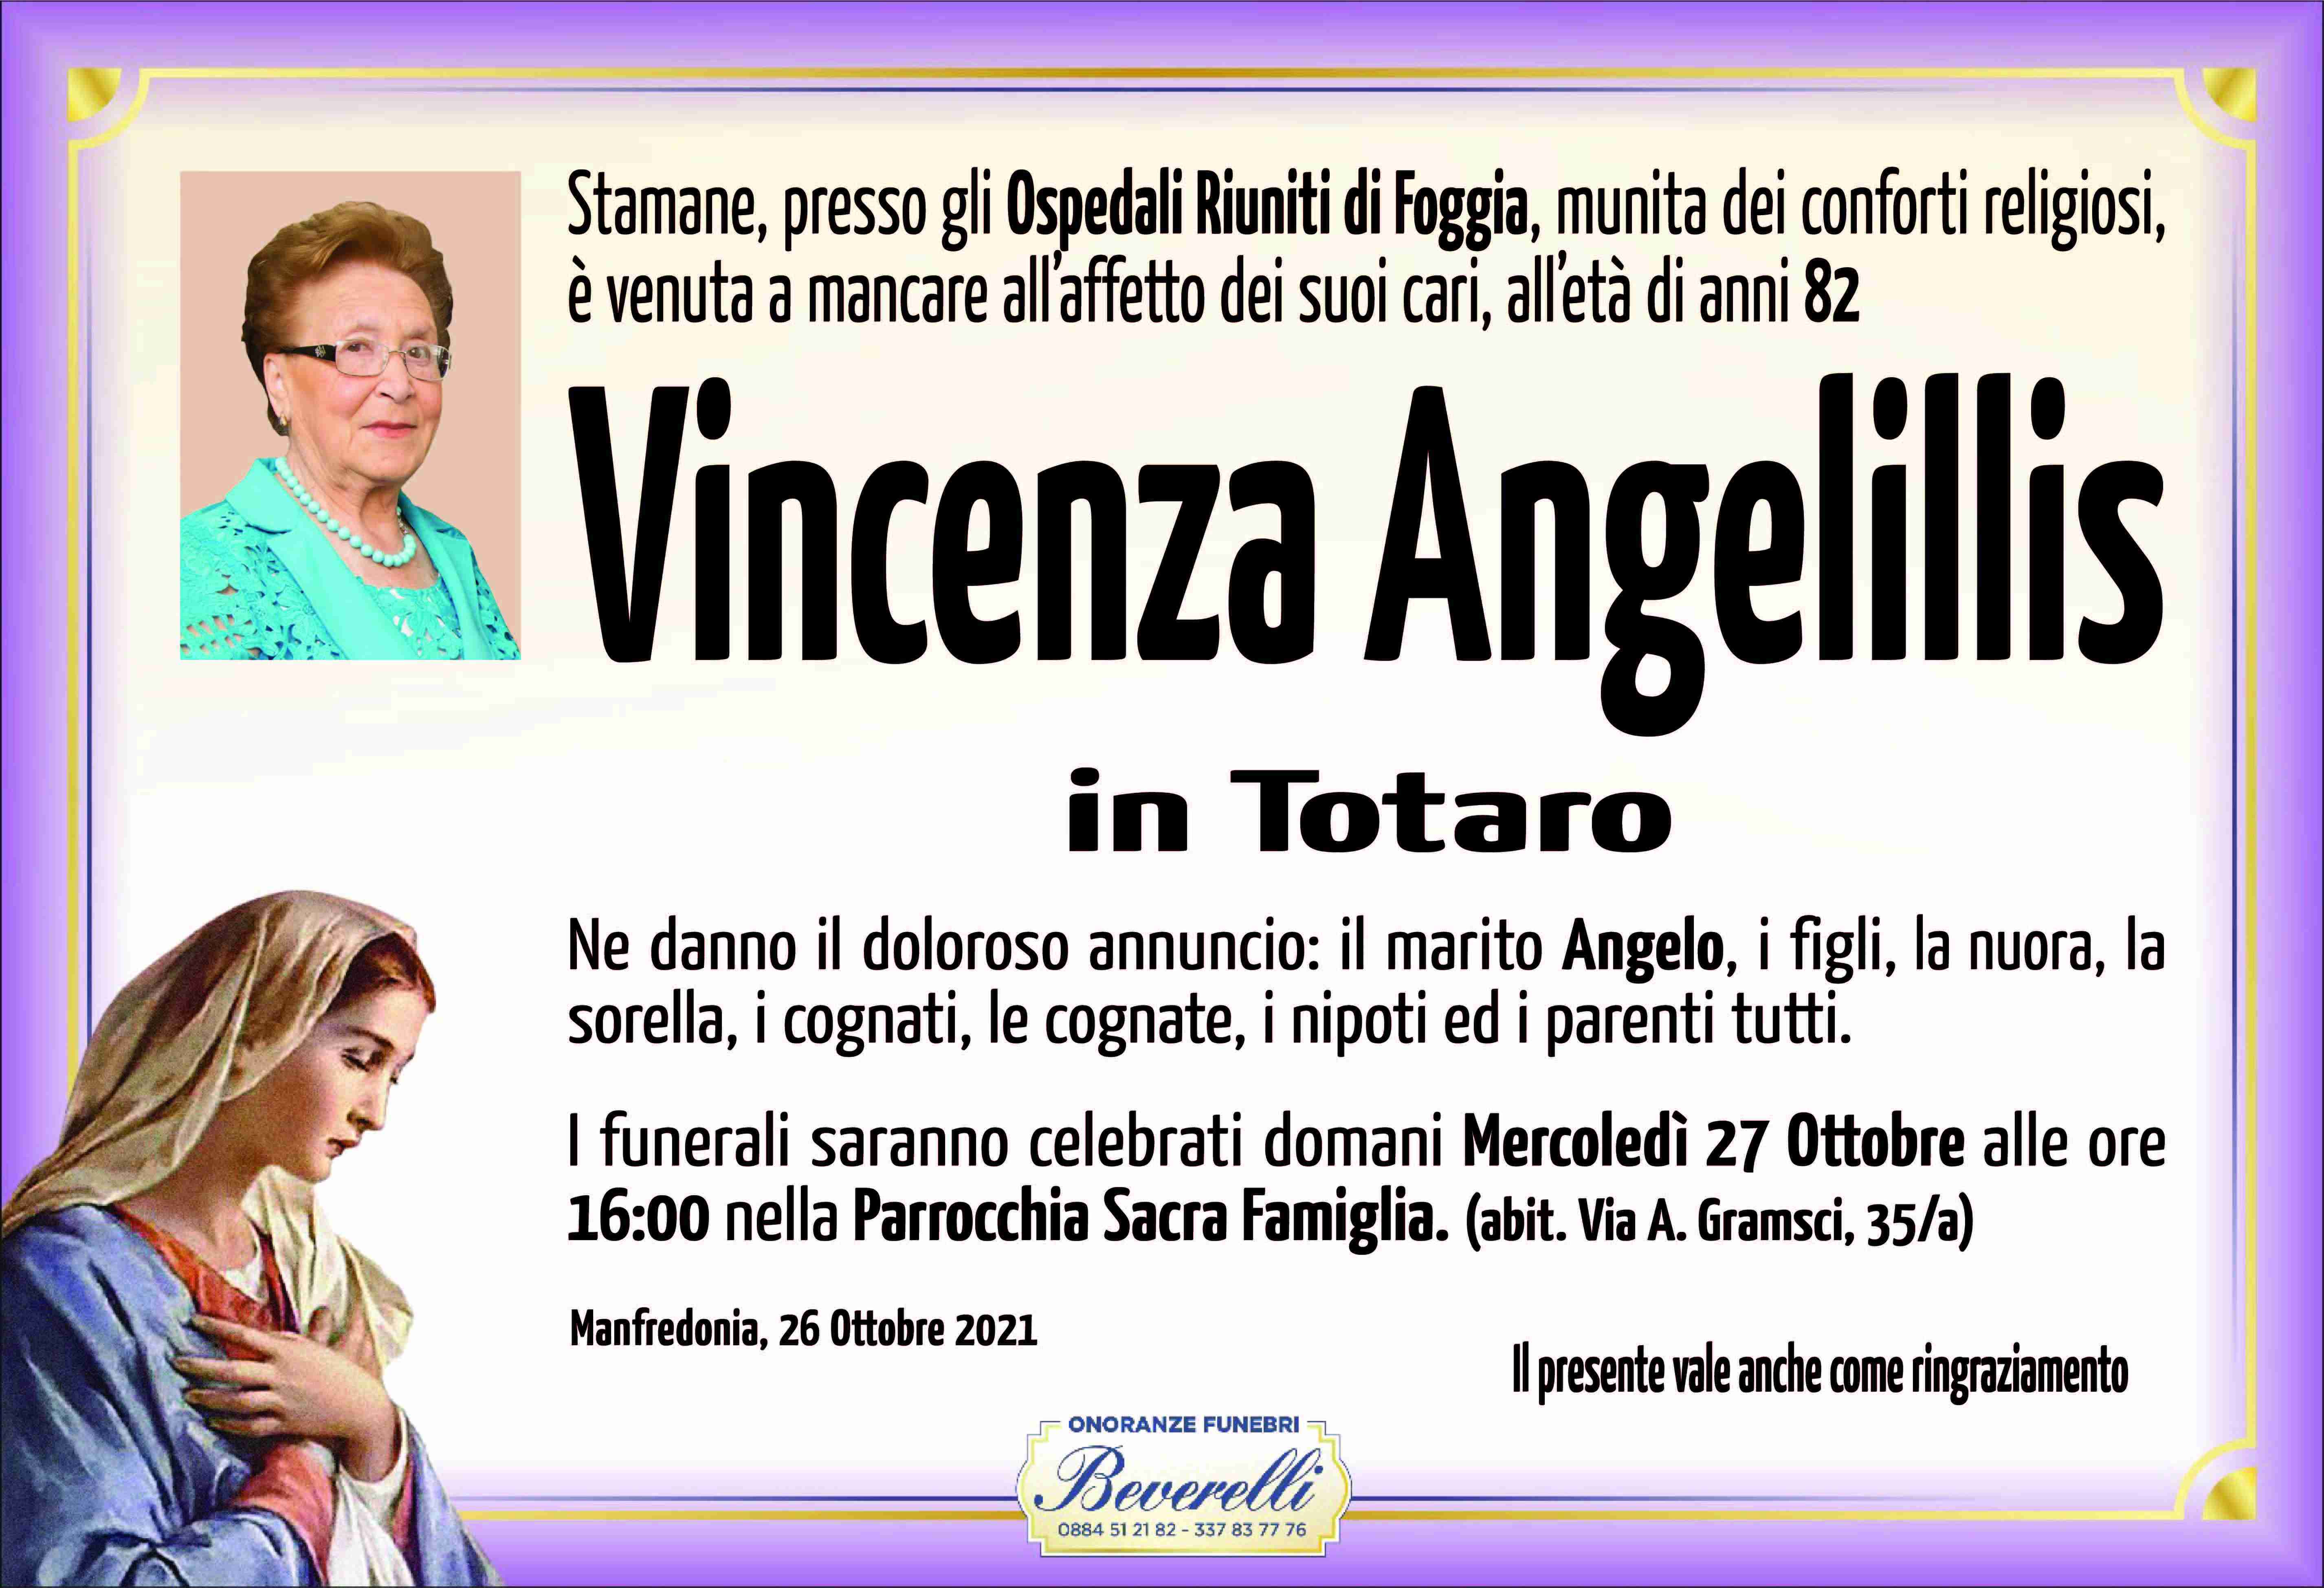 Vincenza Angelillis